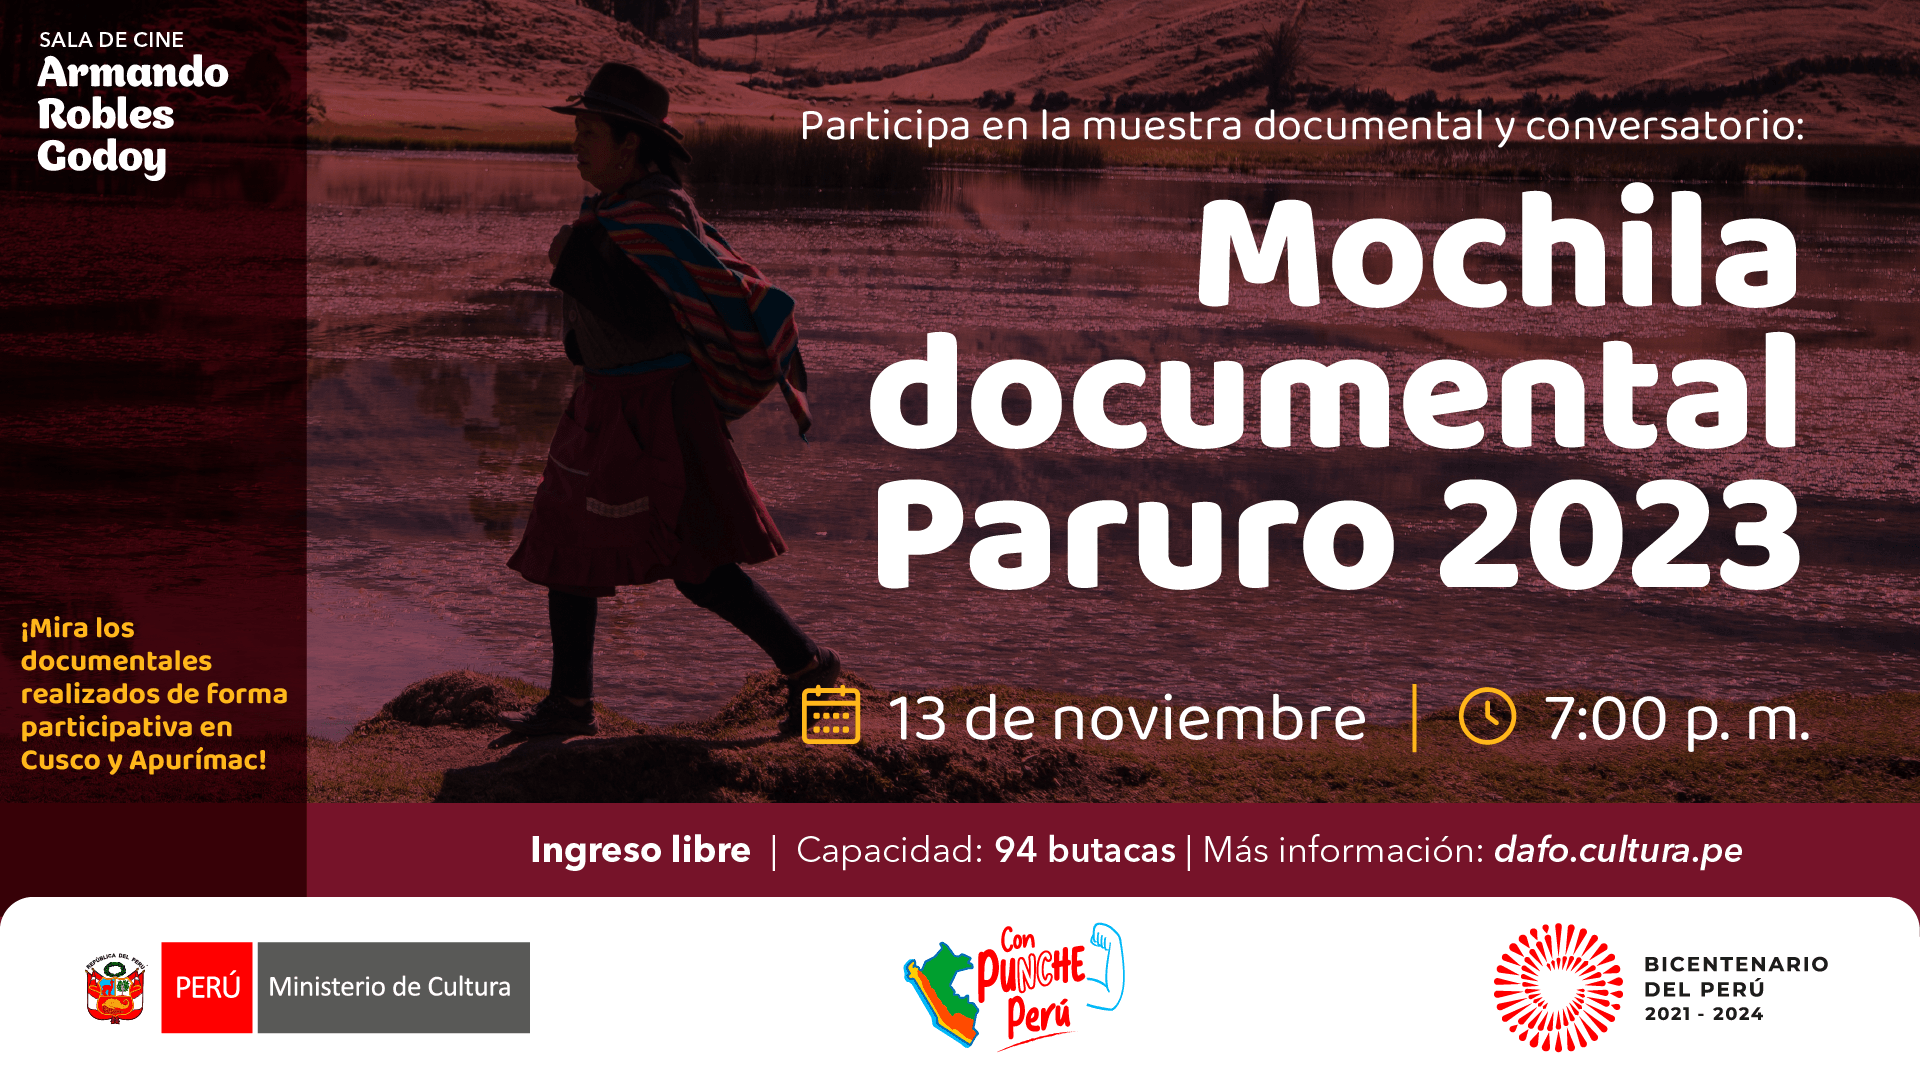 Mochila documental Paruro 2023 en la sala Armando Robles Godoy